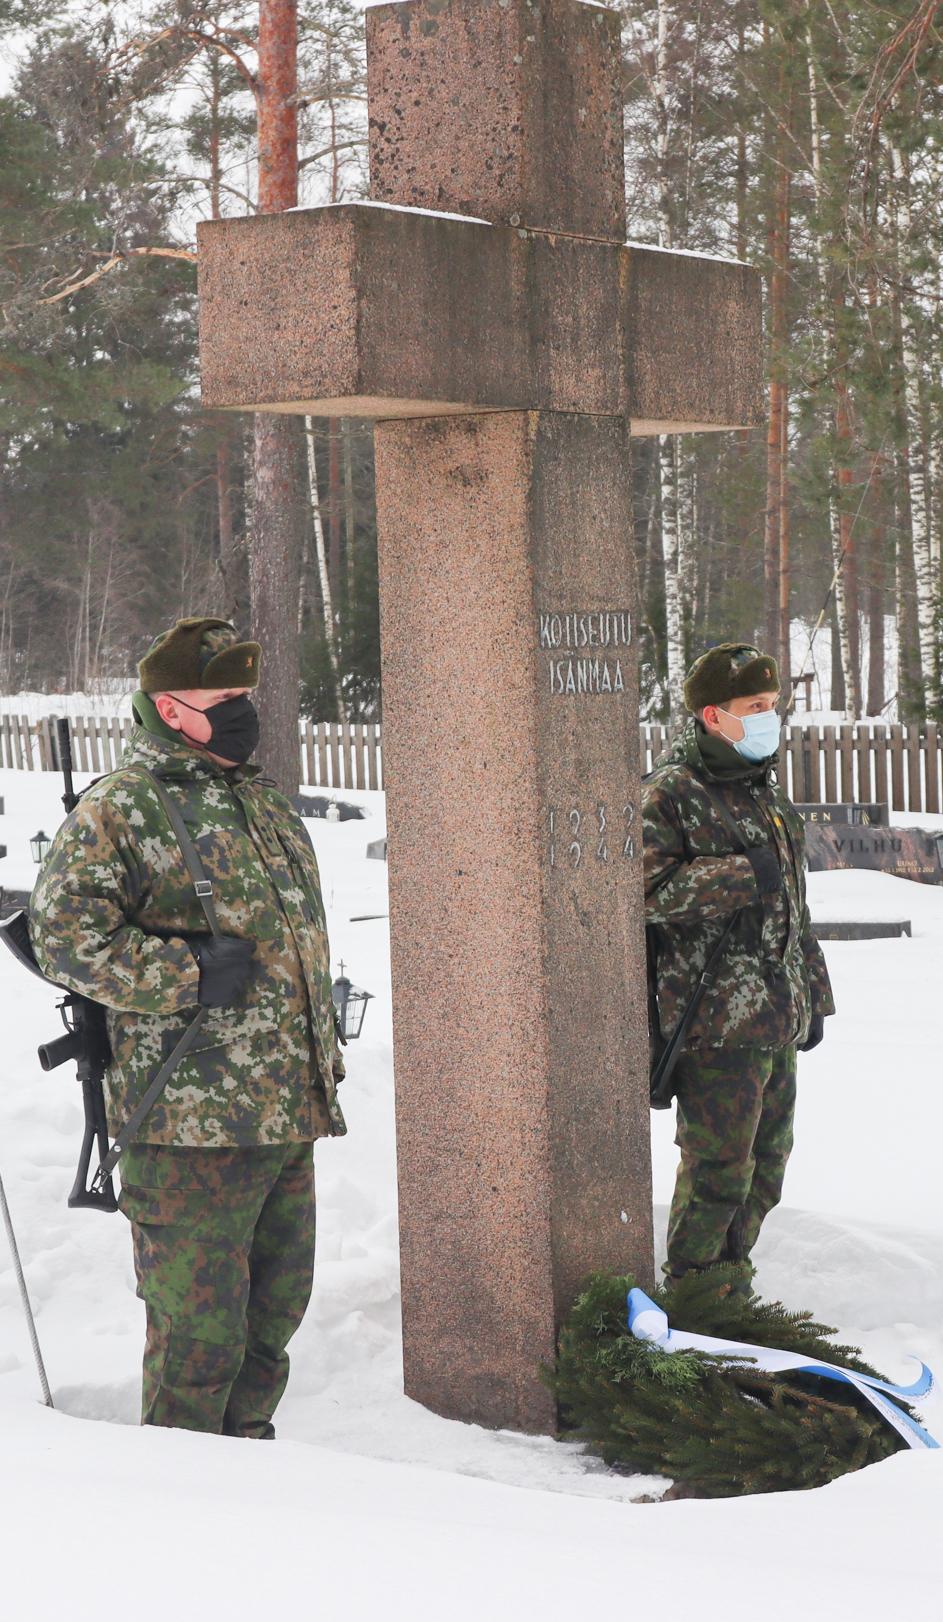 Kaksi sotilasta seisoo vartiossa hautausmaalla Kotiseutu, isanmaa -muistomerkillä, seppele on muistomerkin juurella.